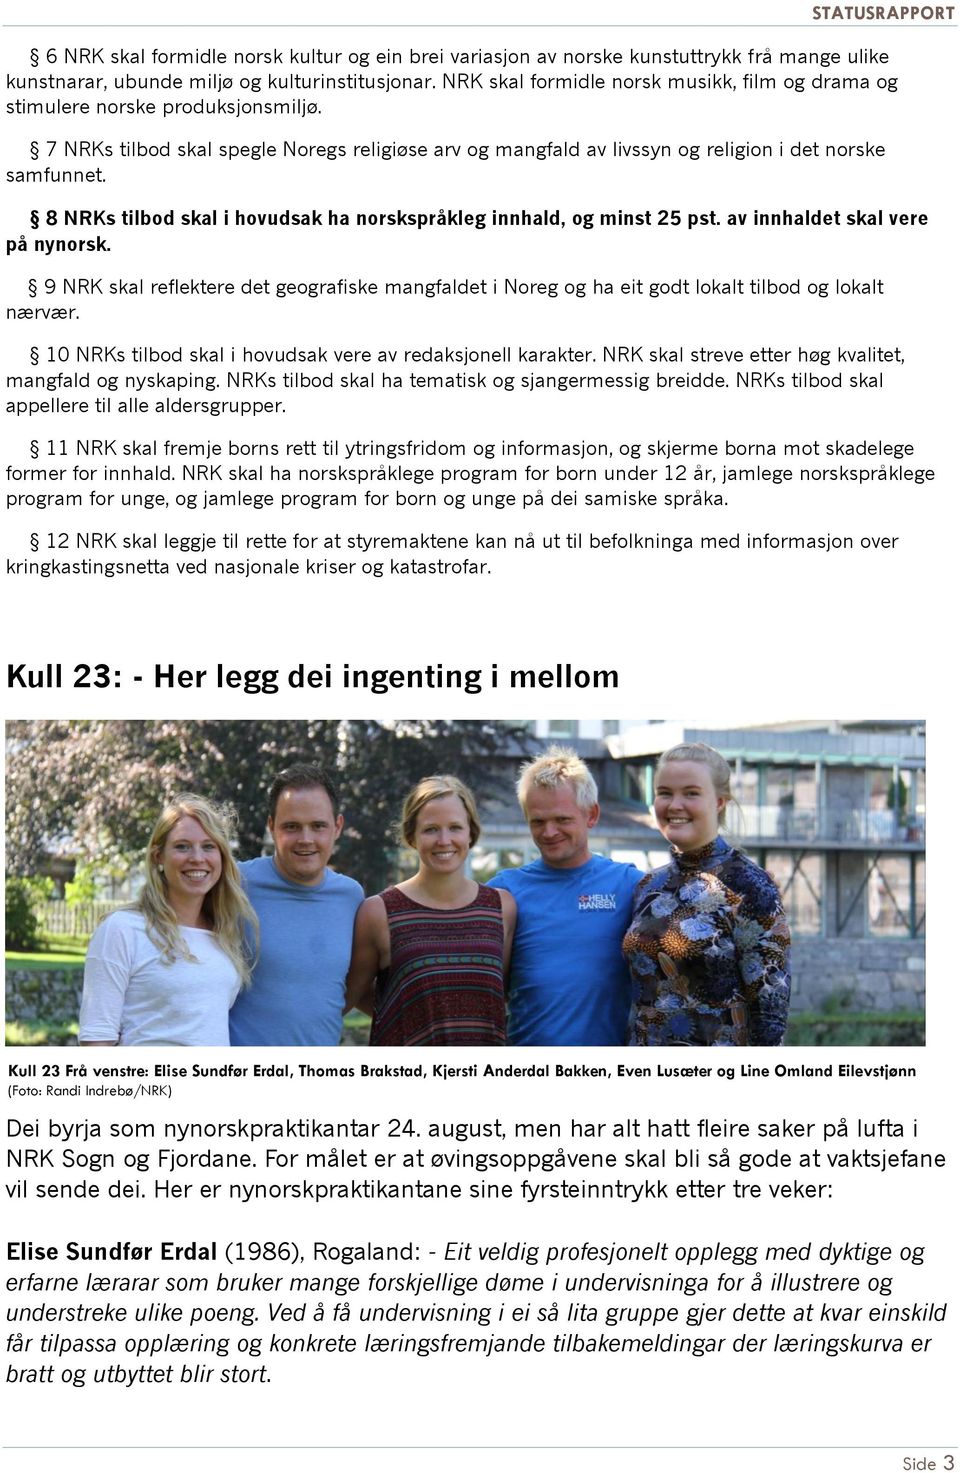 8 NRKs tilbod skal i hovudsak ha norskspråkleg innhald, og minst 25 pst. av innhaldet skal vere på nynorsk.